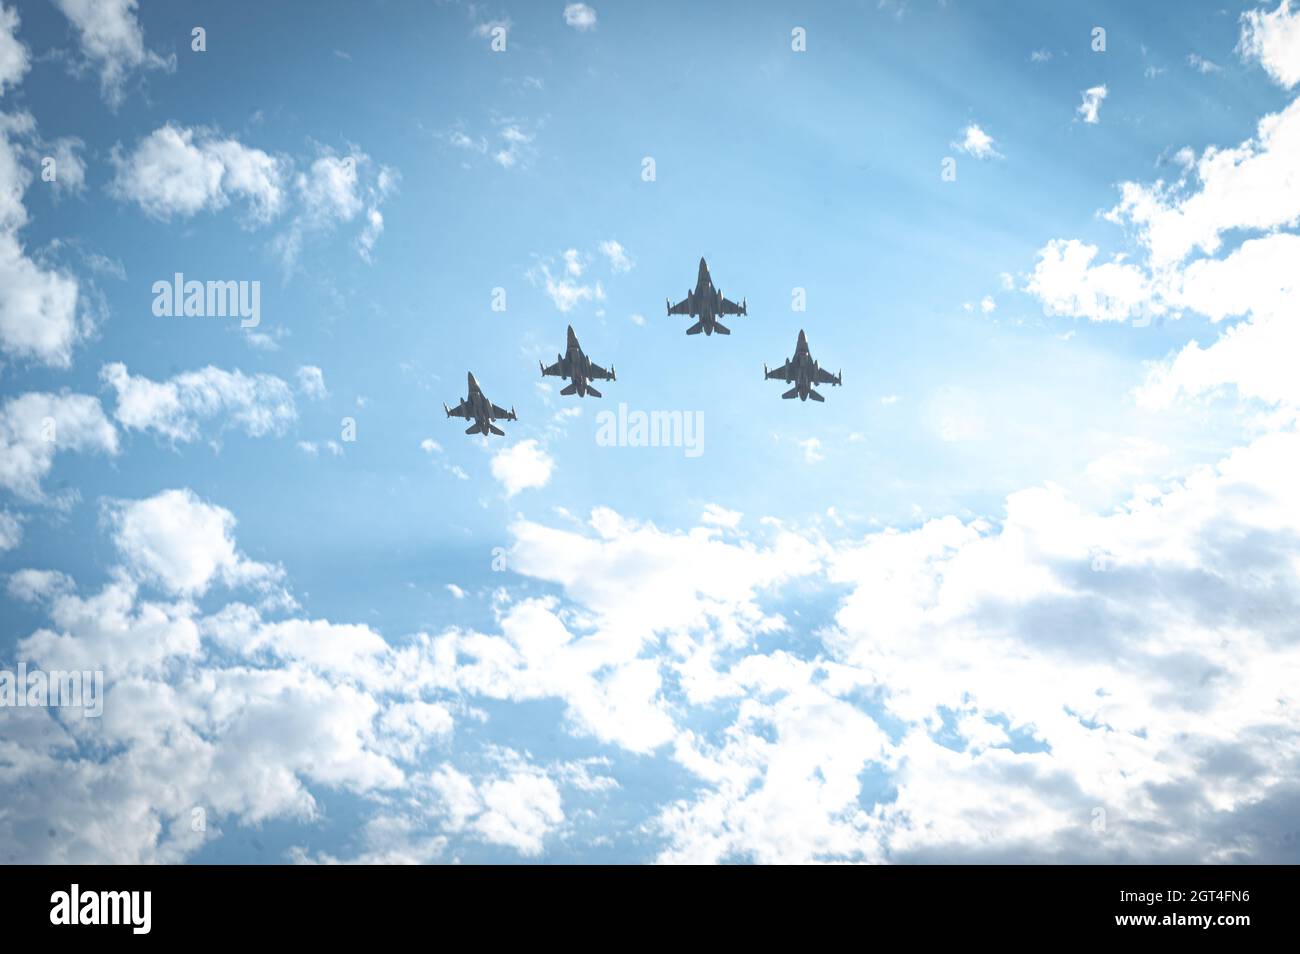 Cuatro Falcons de Combate de la Fuerza Aérea de los Estados Unidos F-16 asignados al ala de combate 56th se elevan en formación el 17 de septiembre de 2021, sobre la Base de la Fuerza Aérea de Luke, Arizona. El sobrevuelo tuvo lugar durante la ceremonia de clausura de la carrera de vigilia de 24 horas POW/MIA. El FW 56th celebra este evento anualmente en observancia del Día Nacional de Reconocimiento POW/MIA para honrar y recordar a aquellos que soportaron el cautiverio enemigo y aquellos que hicieron el sacrificio supremo y aún no han retornado a casa. Foto de stock